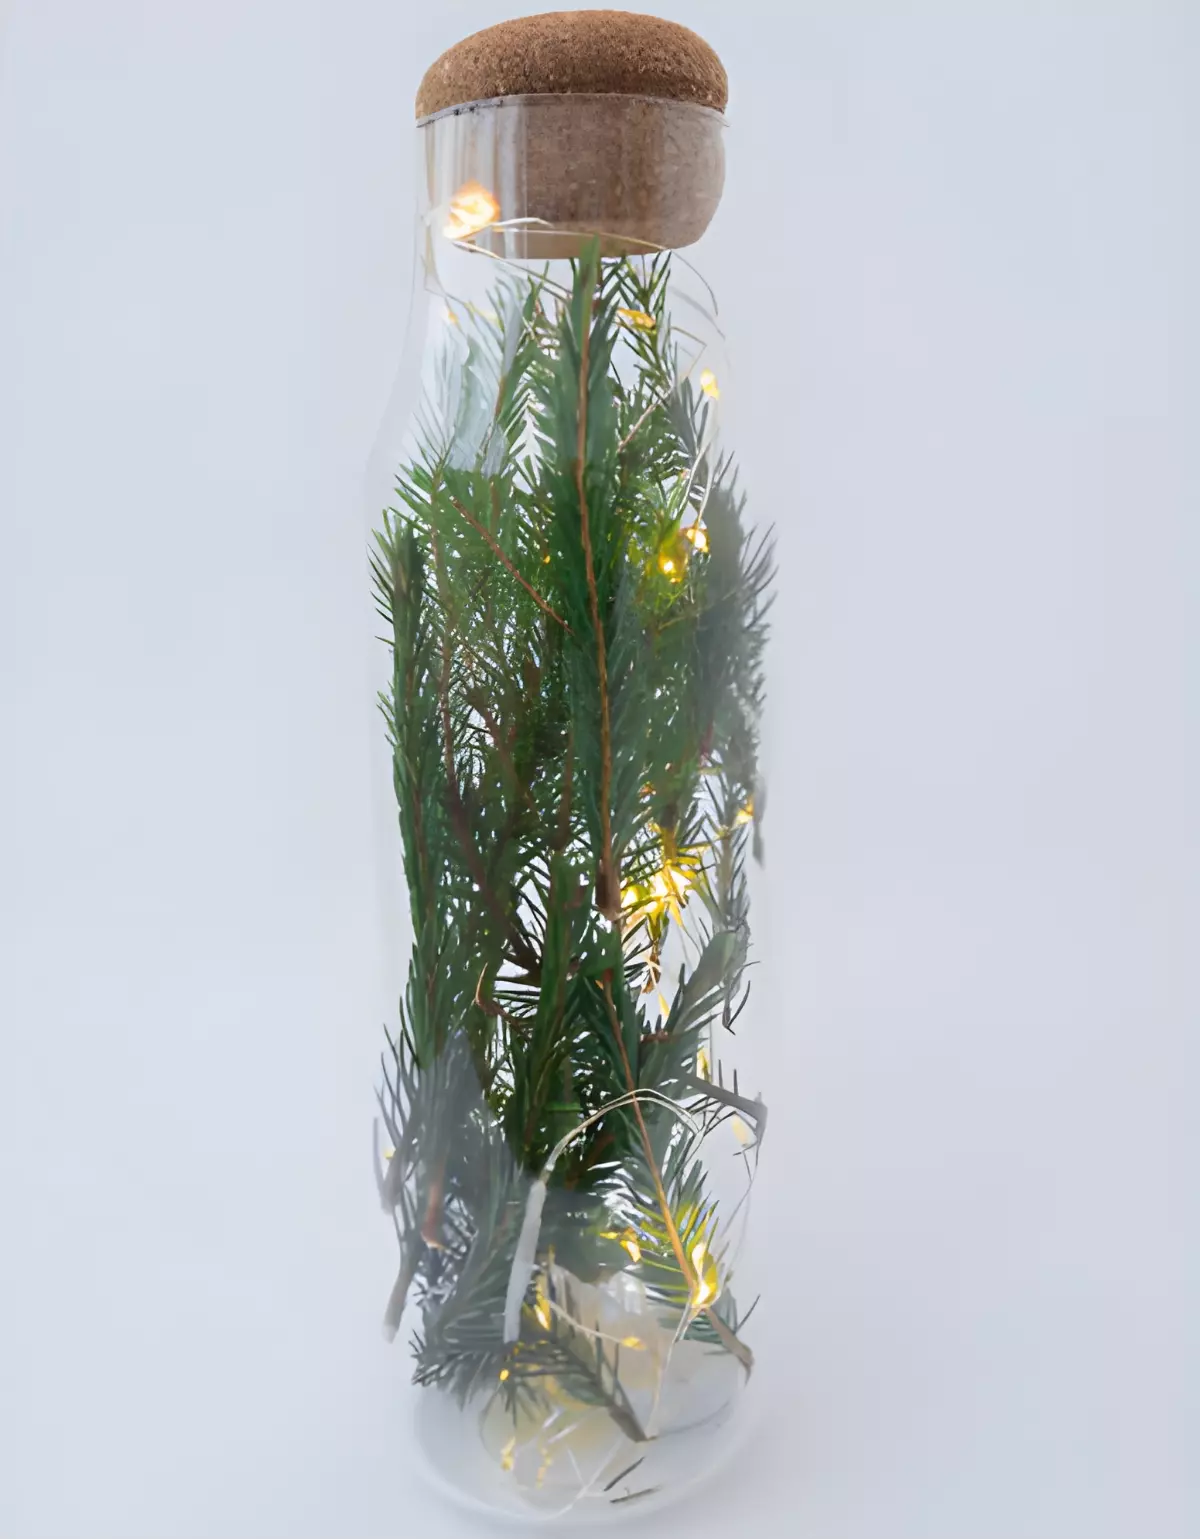 branche de sapin enferme dans une bouteille transparente avec des petites lumieres a l interieur